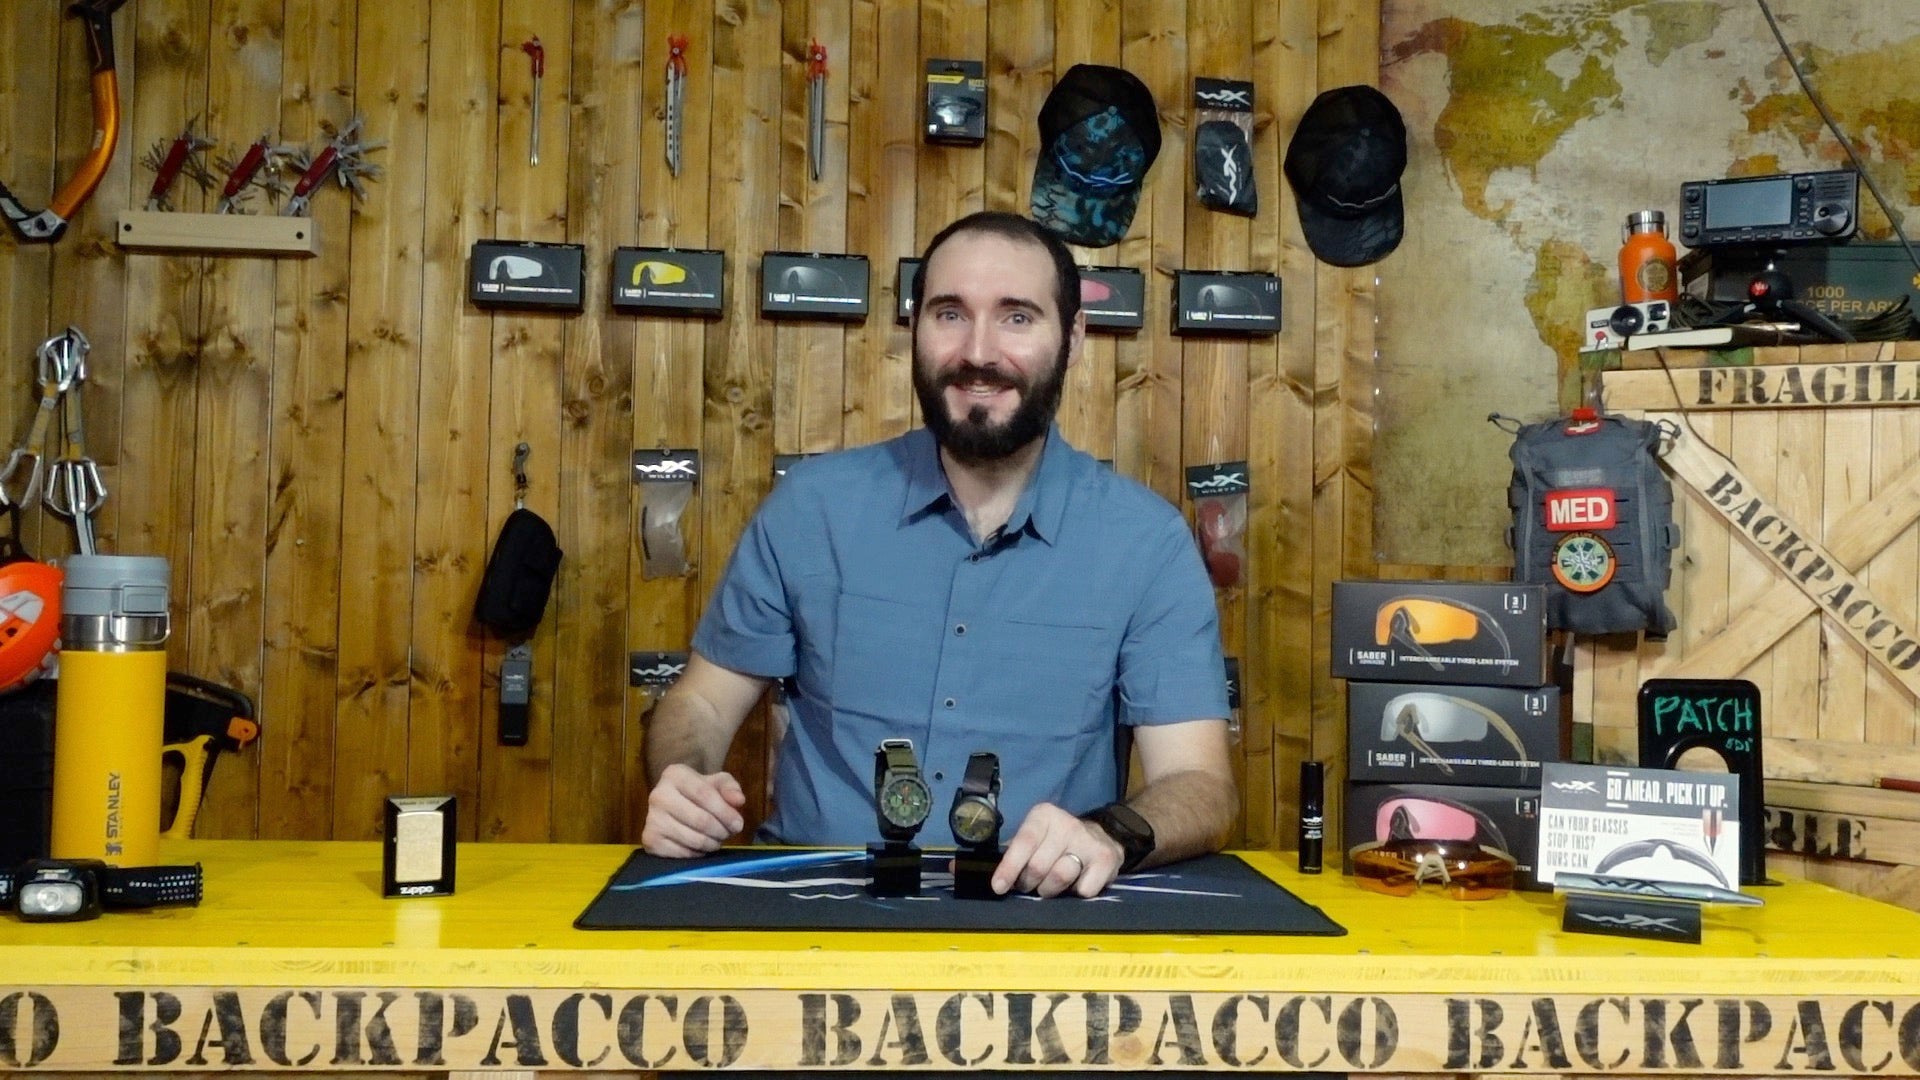 Paolo di Backpacco spiega gli orologi Outpost Chrono e Pathfinder watch di 5.11